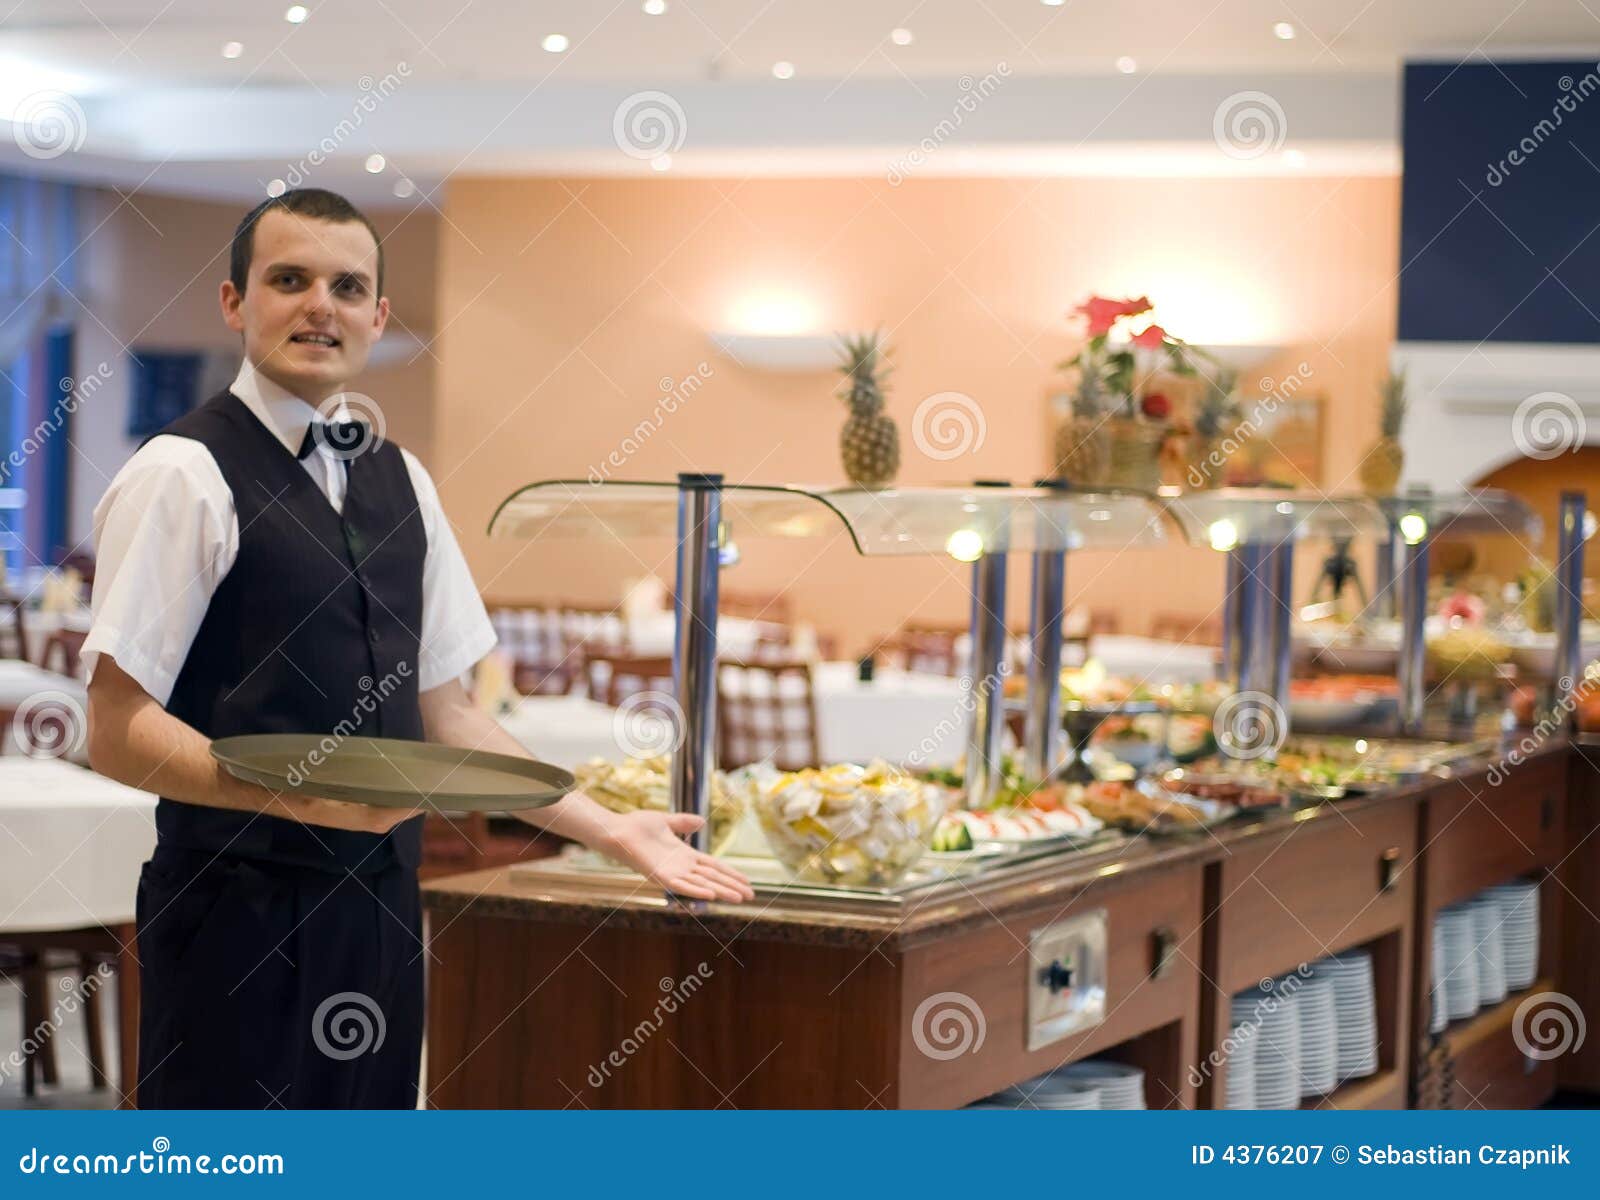 waiter and buffet